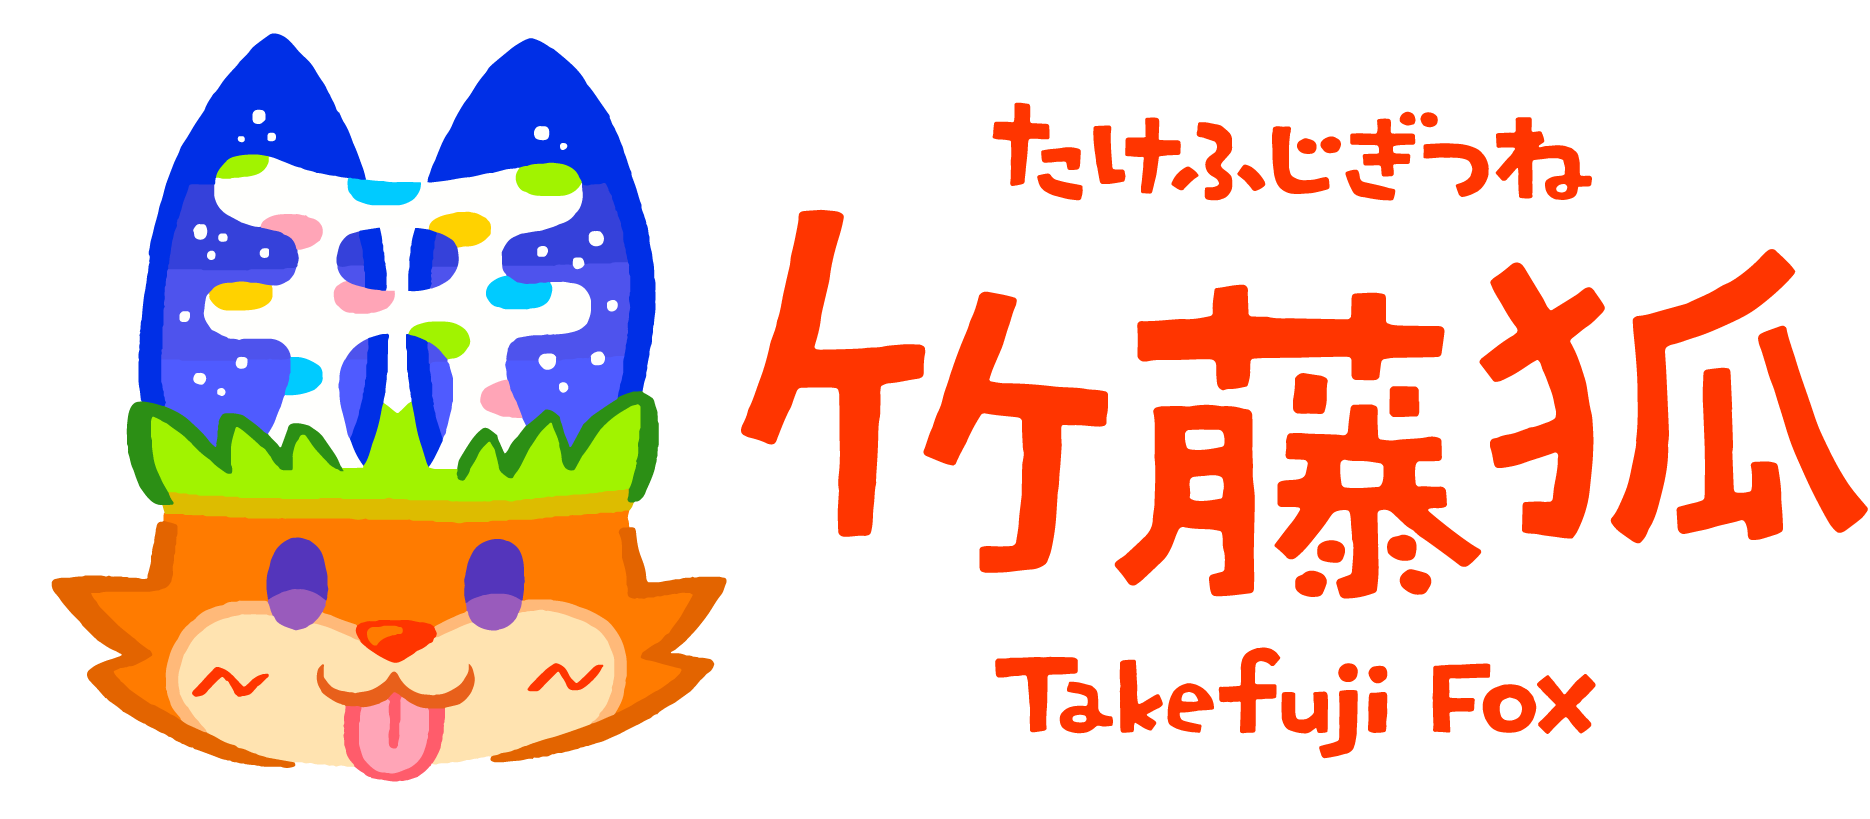 竹藤狐 Takefuji Commission